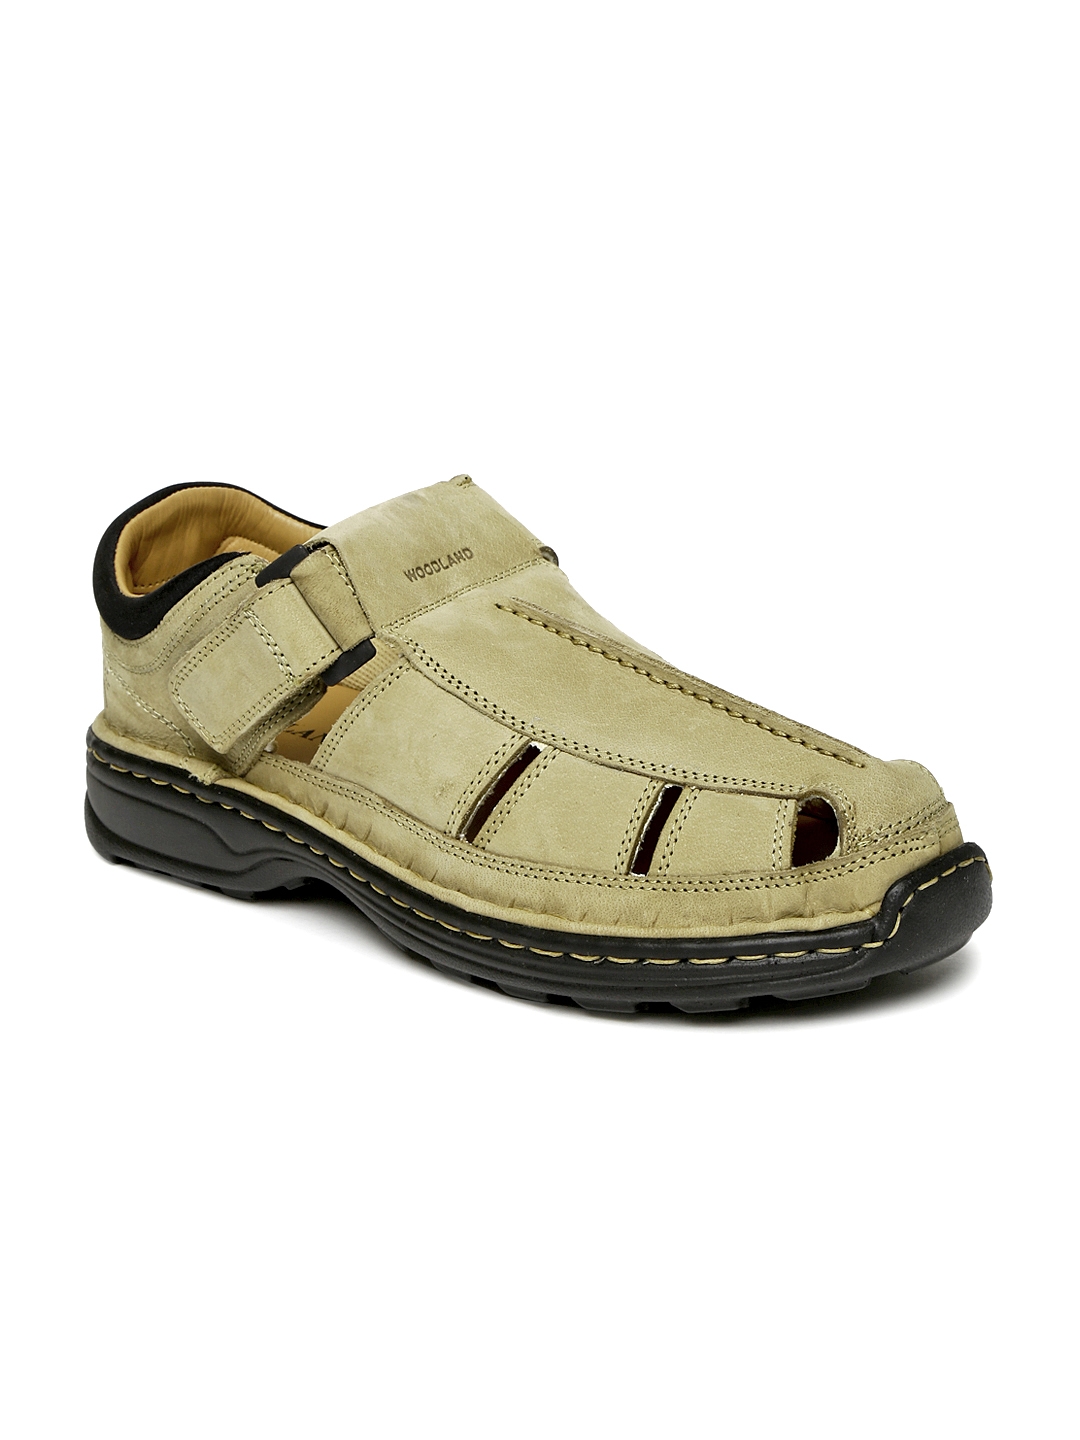 Buy Khaki Sandals for Men by WOODLAND Online | Ajio.com-sgquangbinhtourist.com.vn